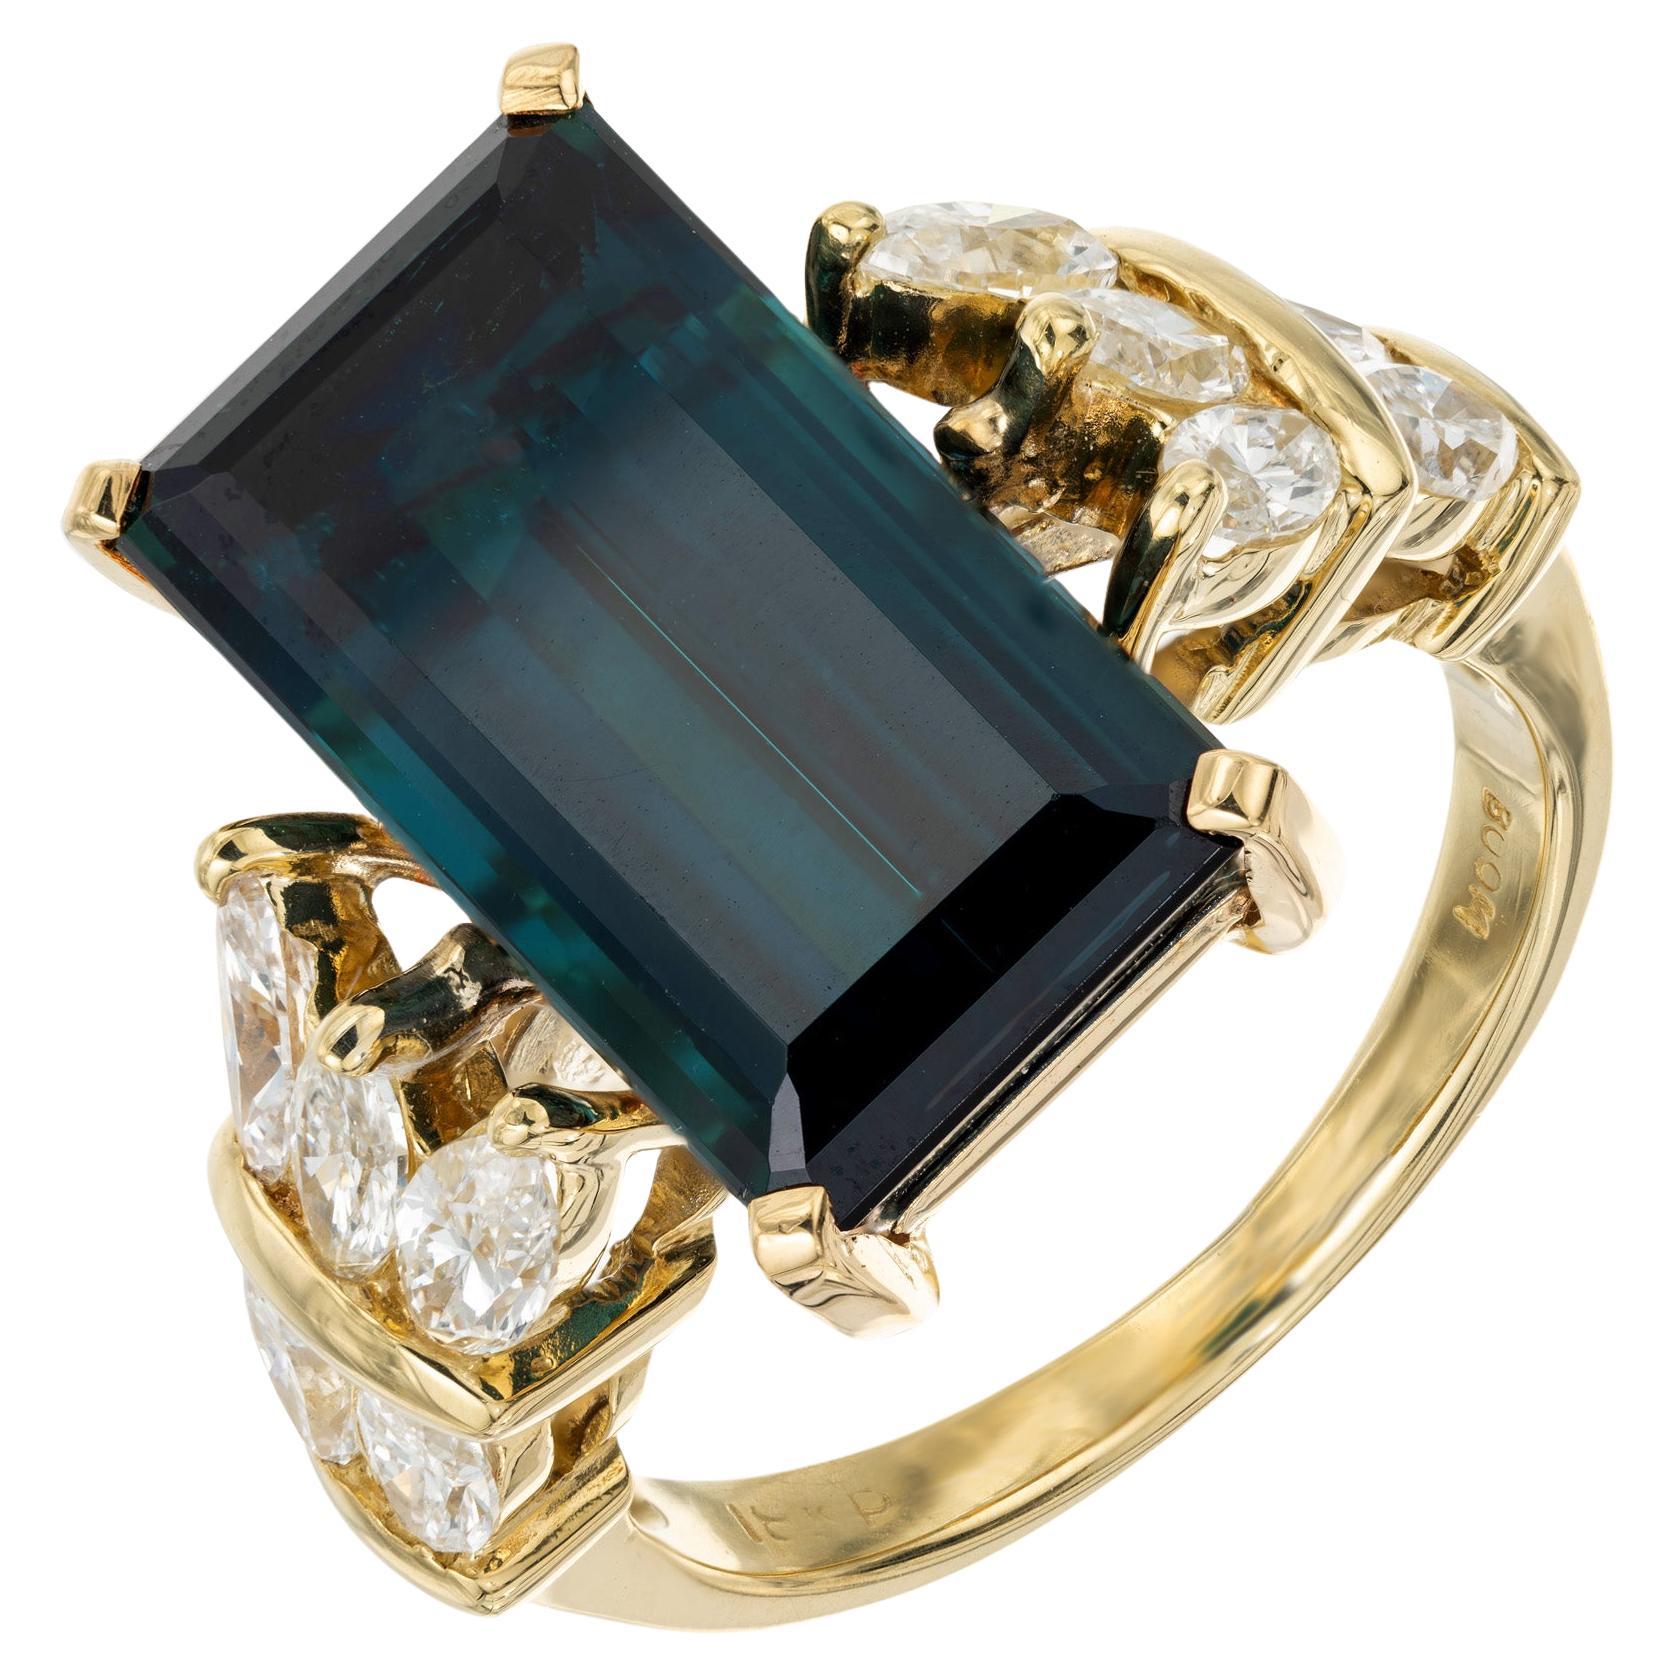 1960er Jahre Blaugrüner Indicolith Turmalin und Diamantring. Dieses zeitlose Schmuckstück beginnt mit einem grünlich-blauen Indicolite Turmalin im Smaragd-Schliff mit einem Gesamtgewicht von 8,55cts. Die Fassung besteht aus 18 Karat Gelbgold und ist